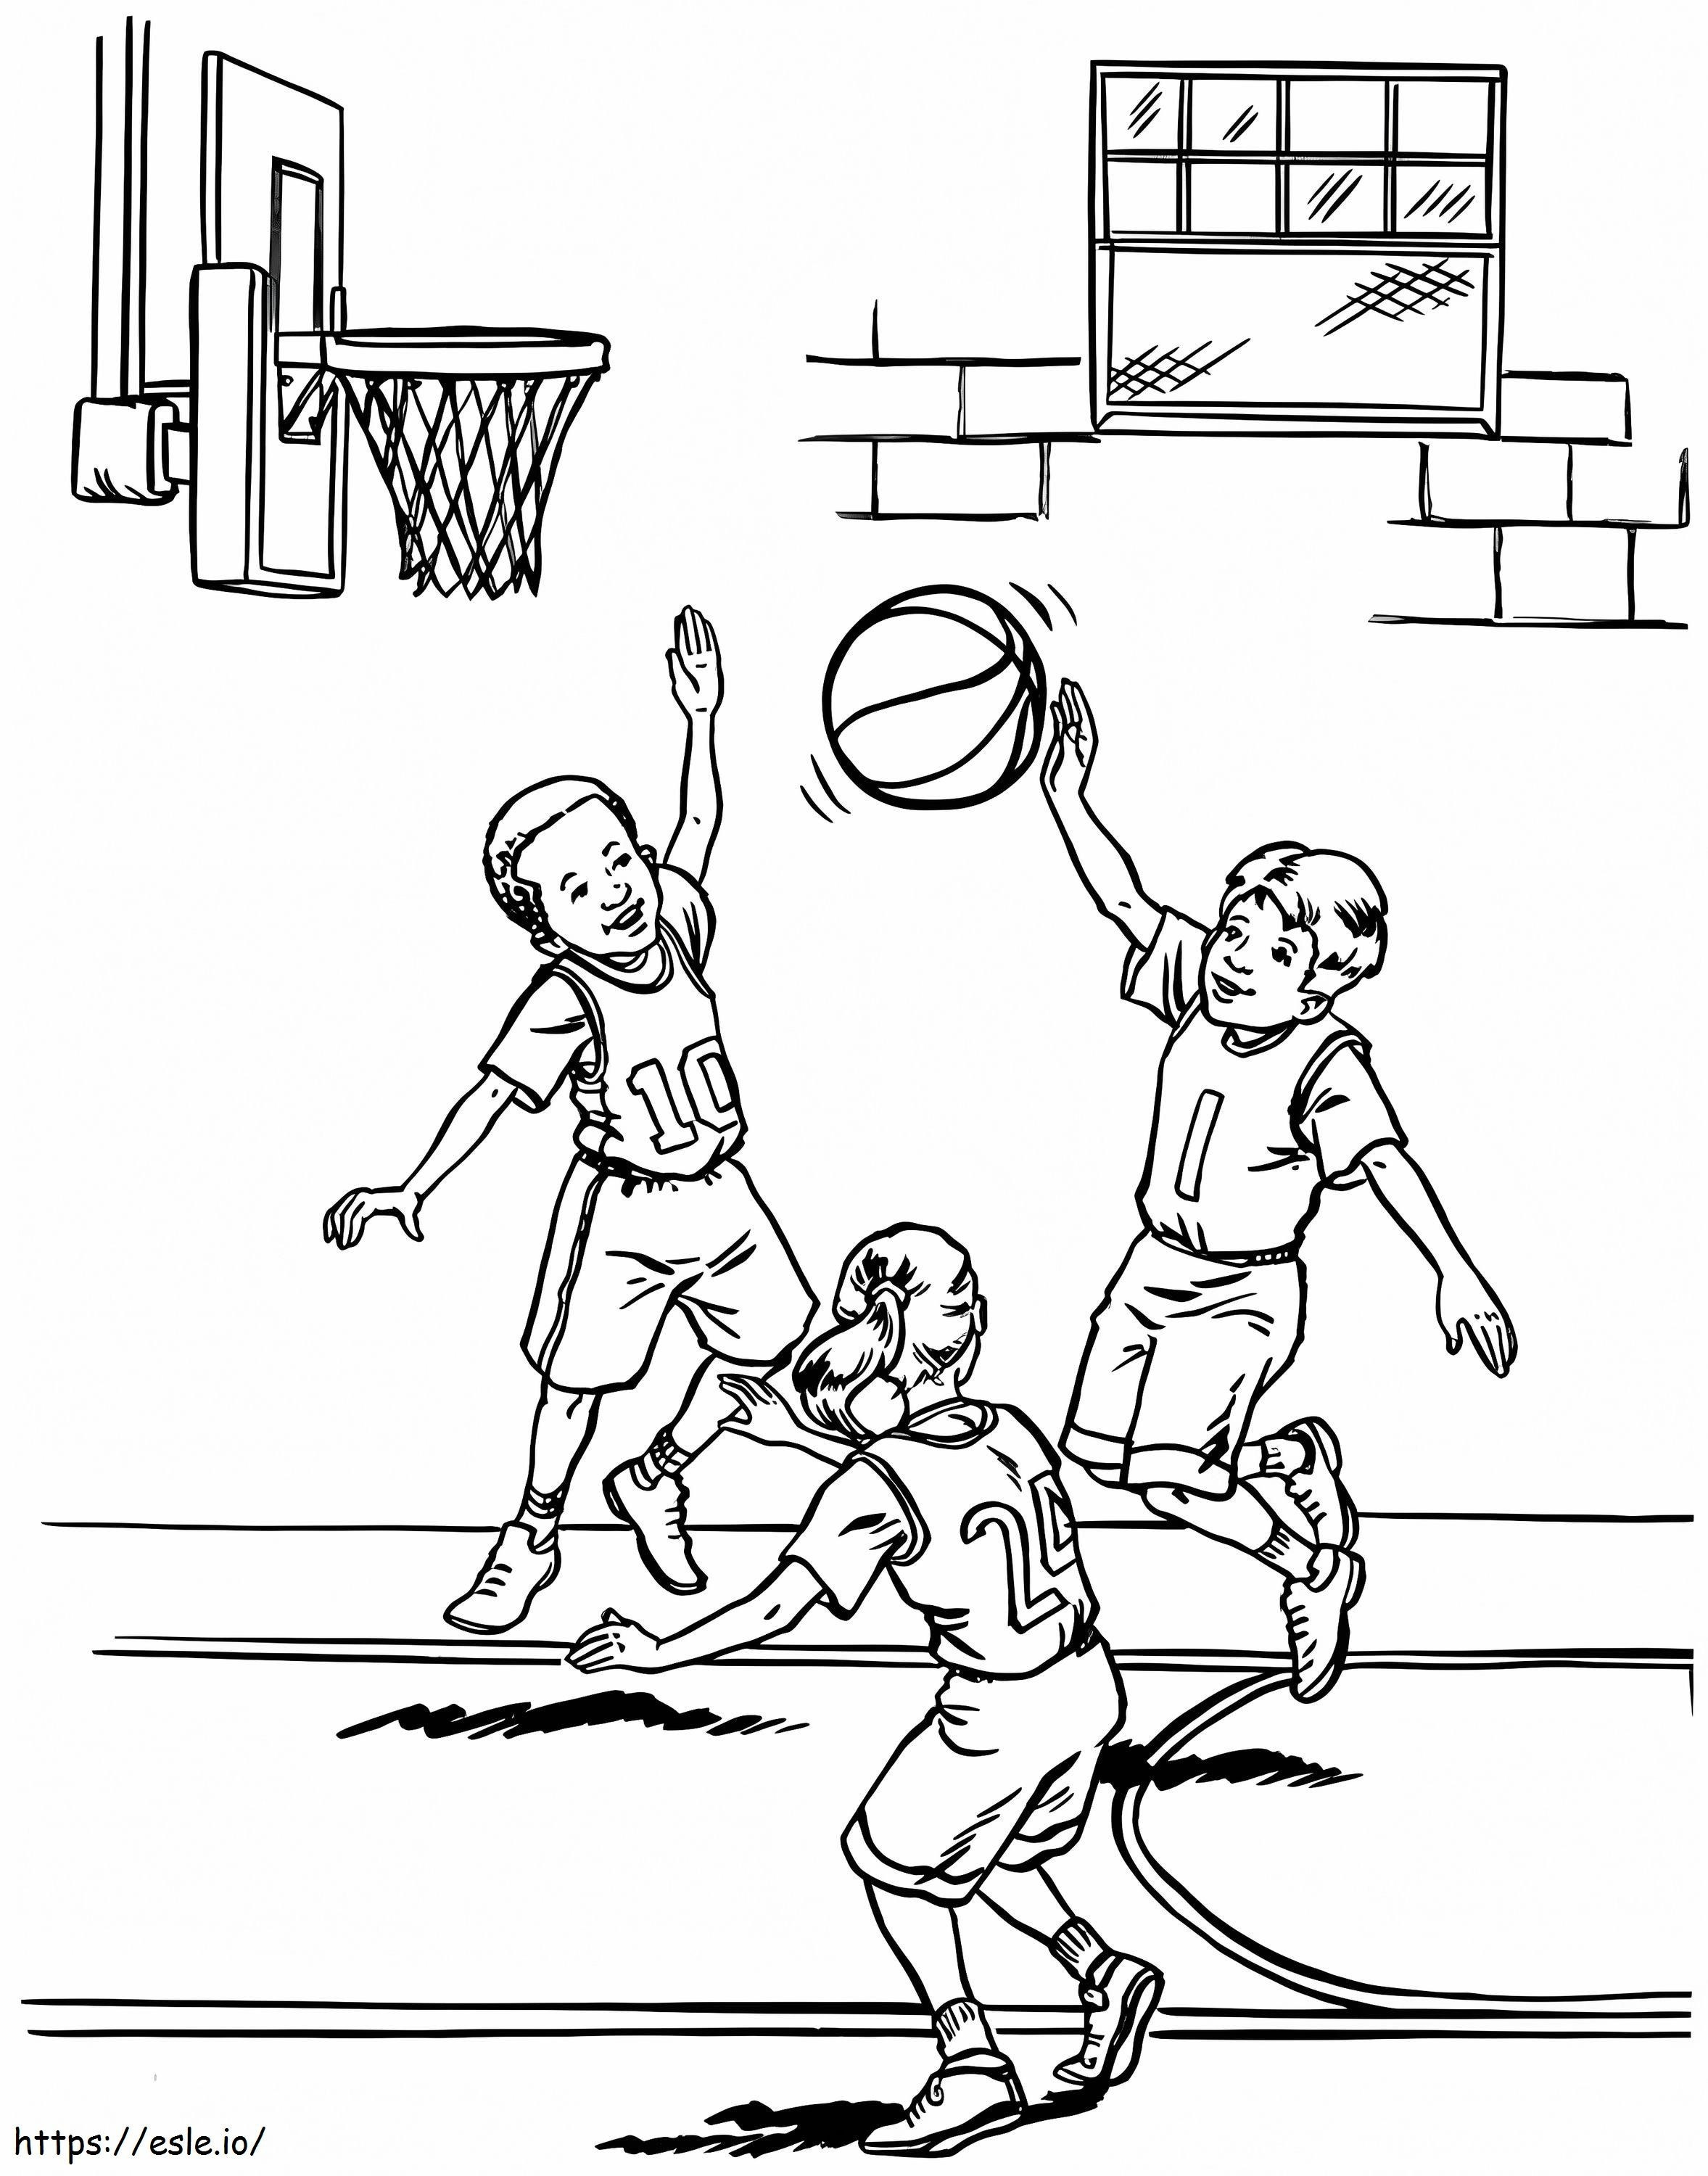 Üç Çocuk Basketbol Oynuyor boyama